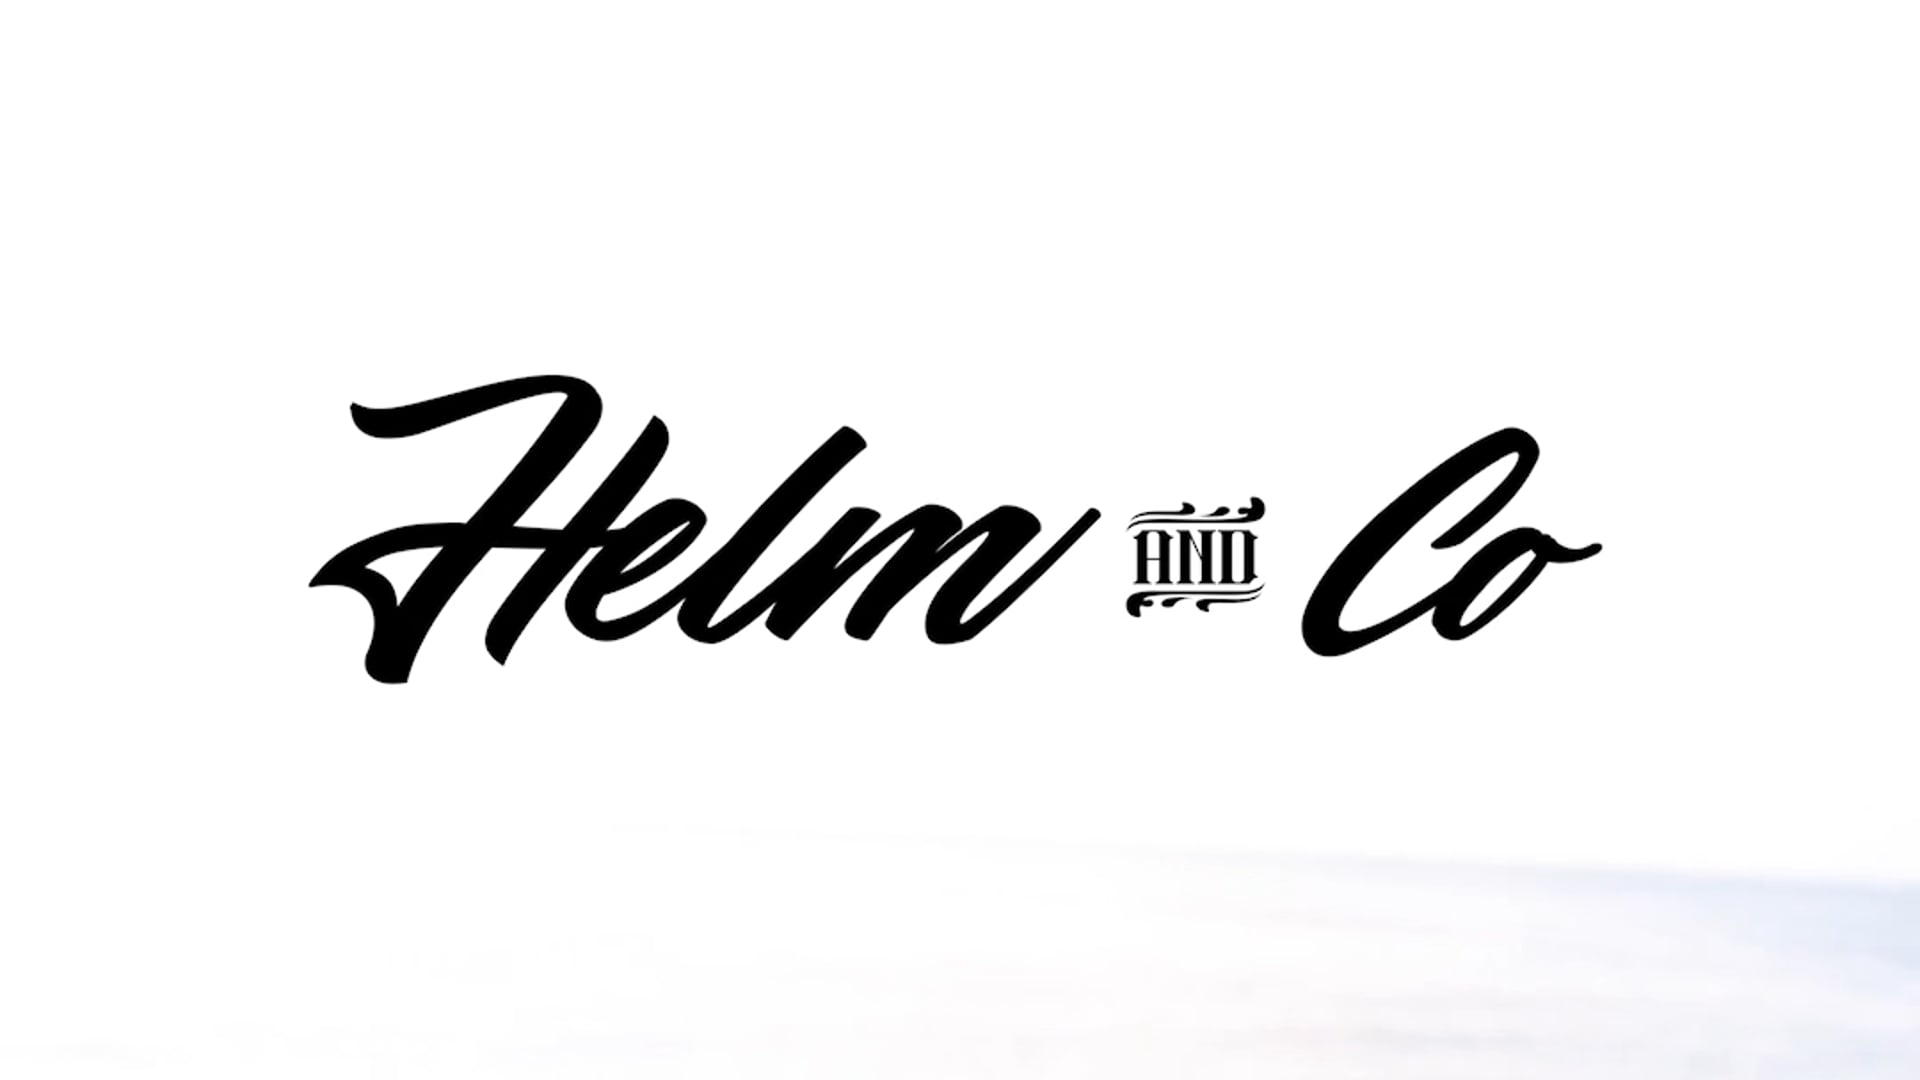 Helm & Co